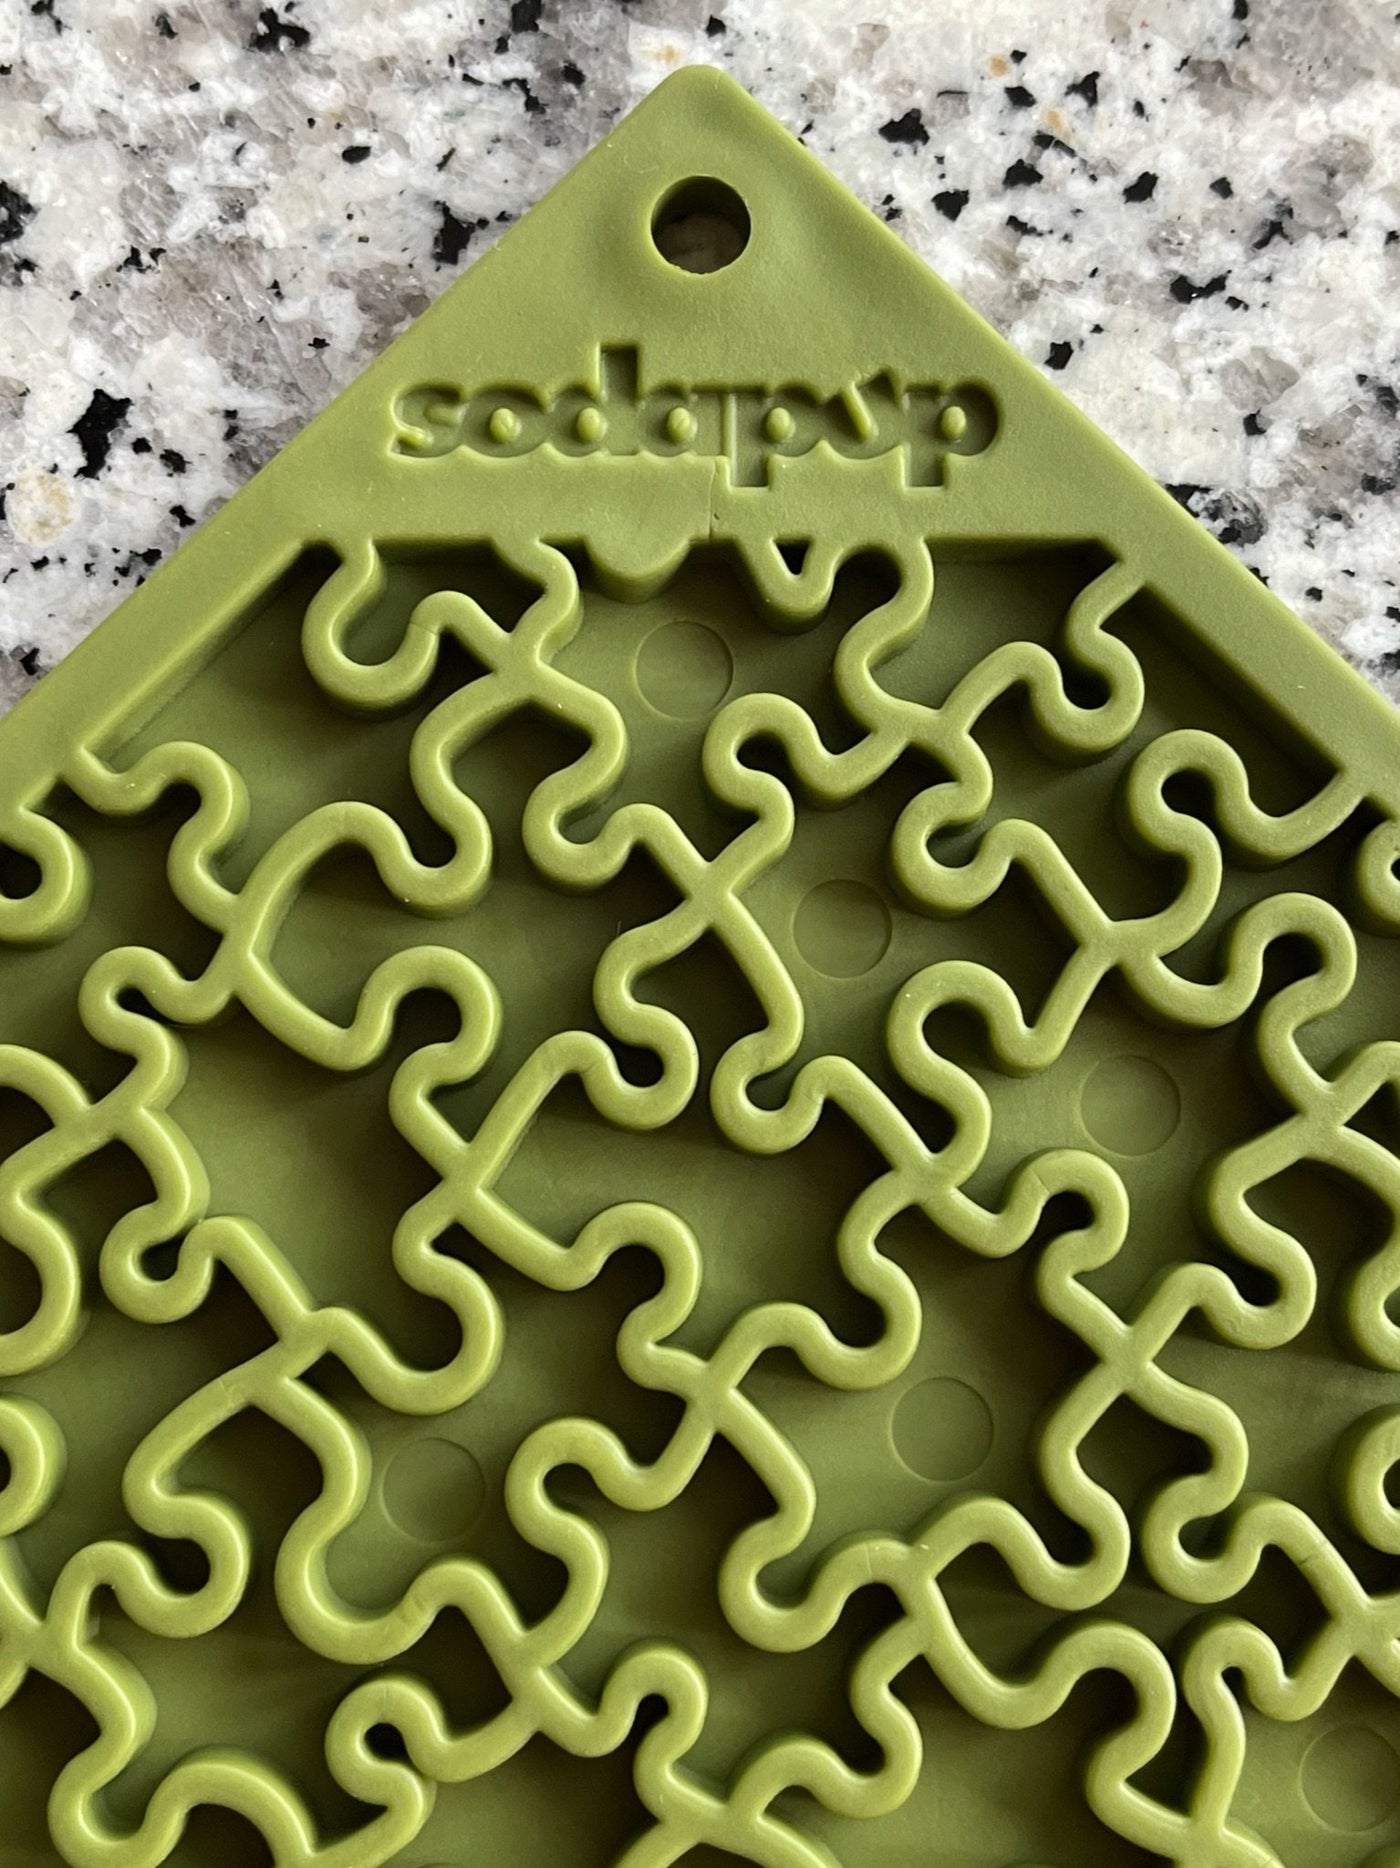 Green Sodapup Jigsaw Design E-Lick Mat